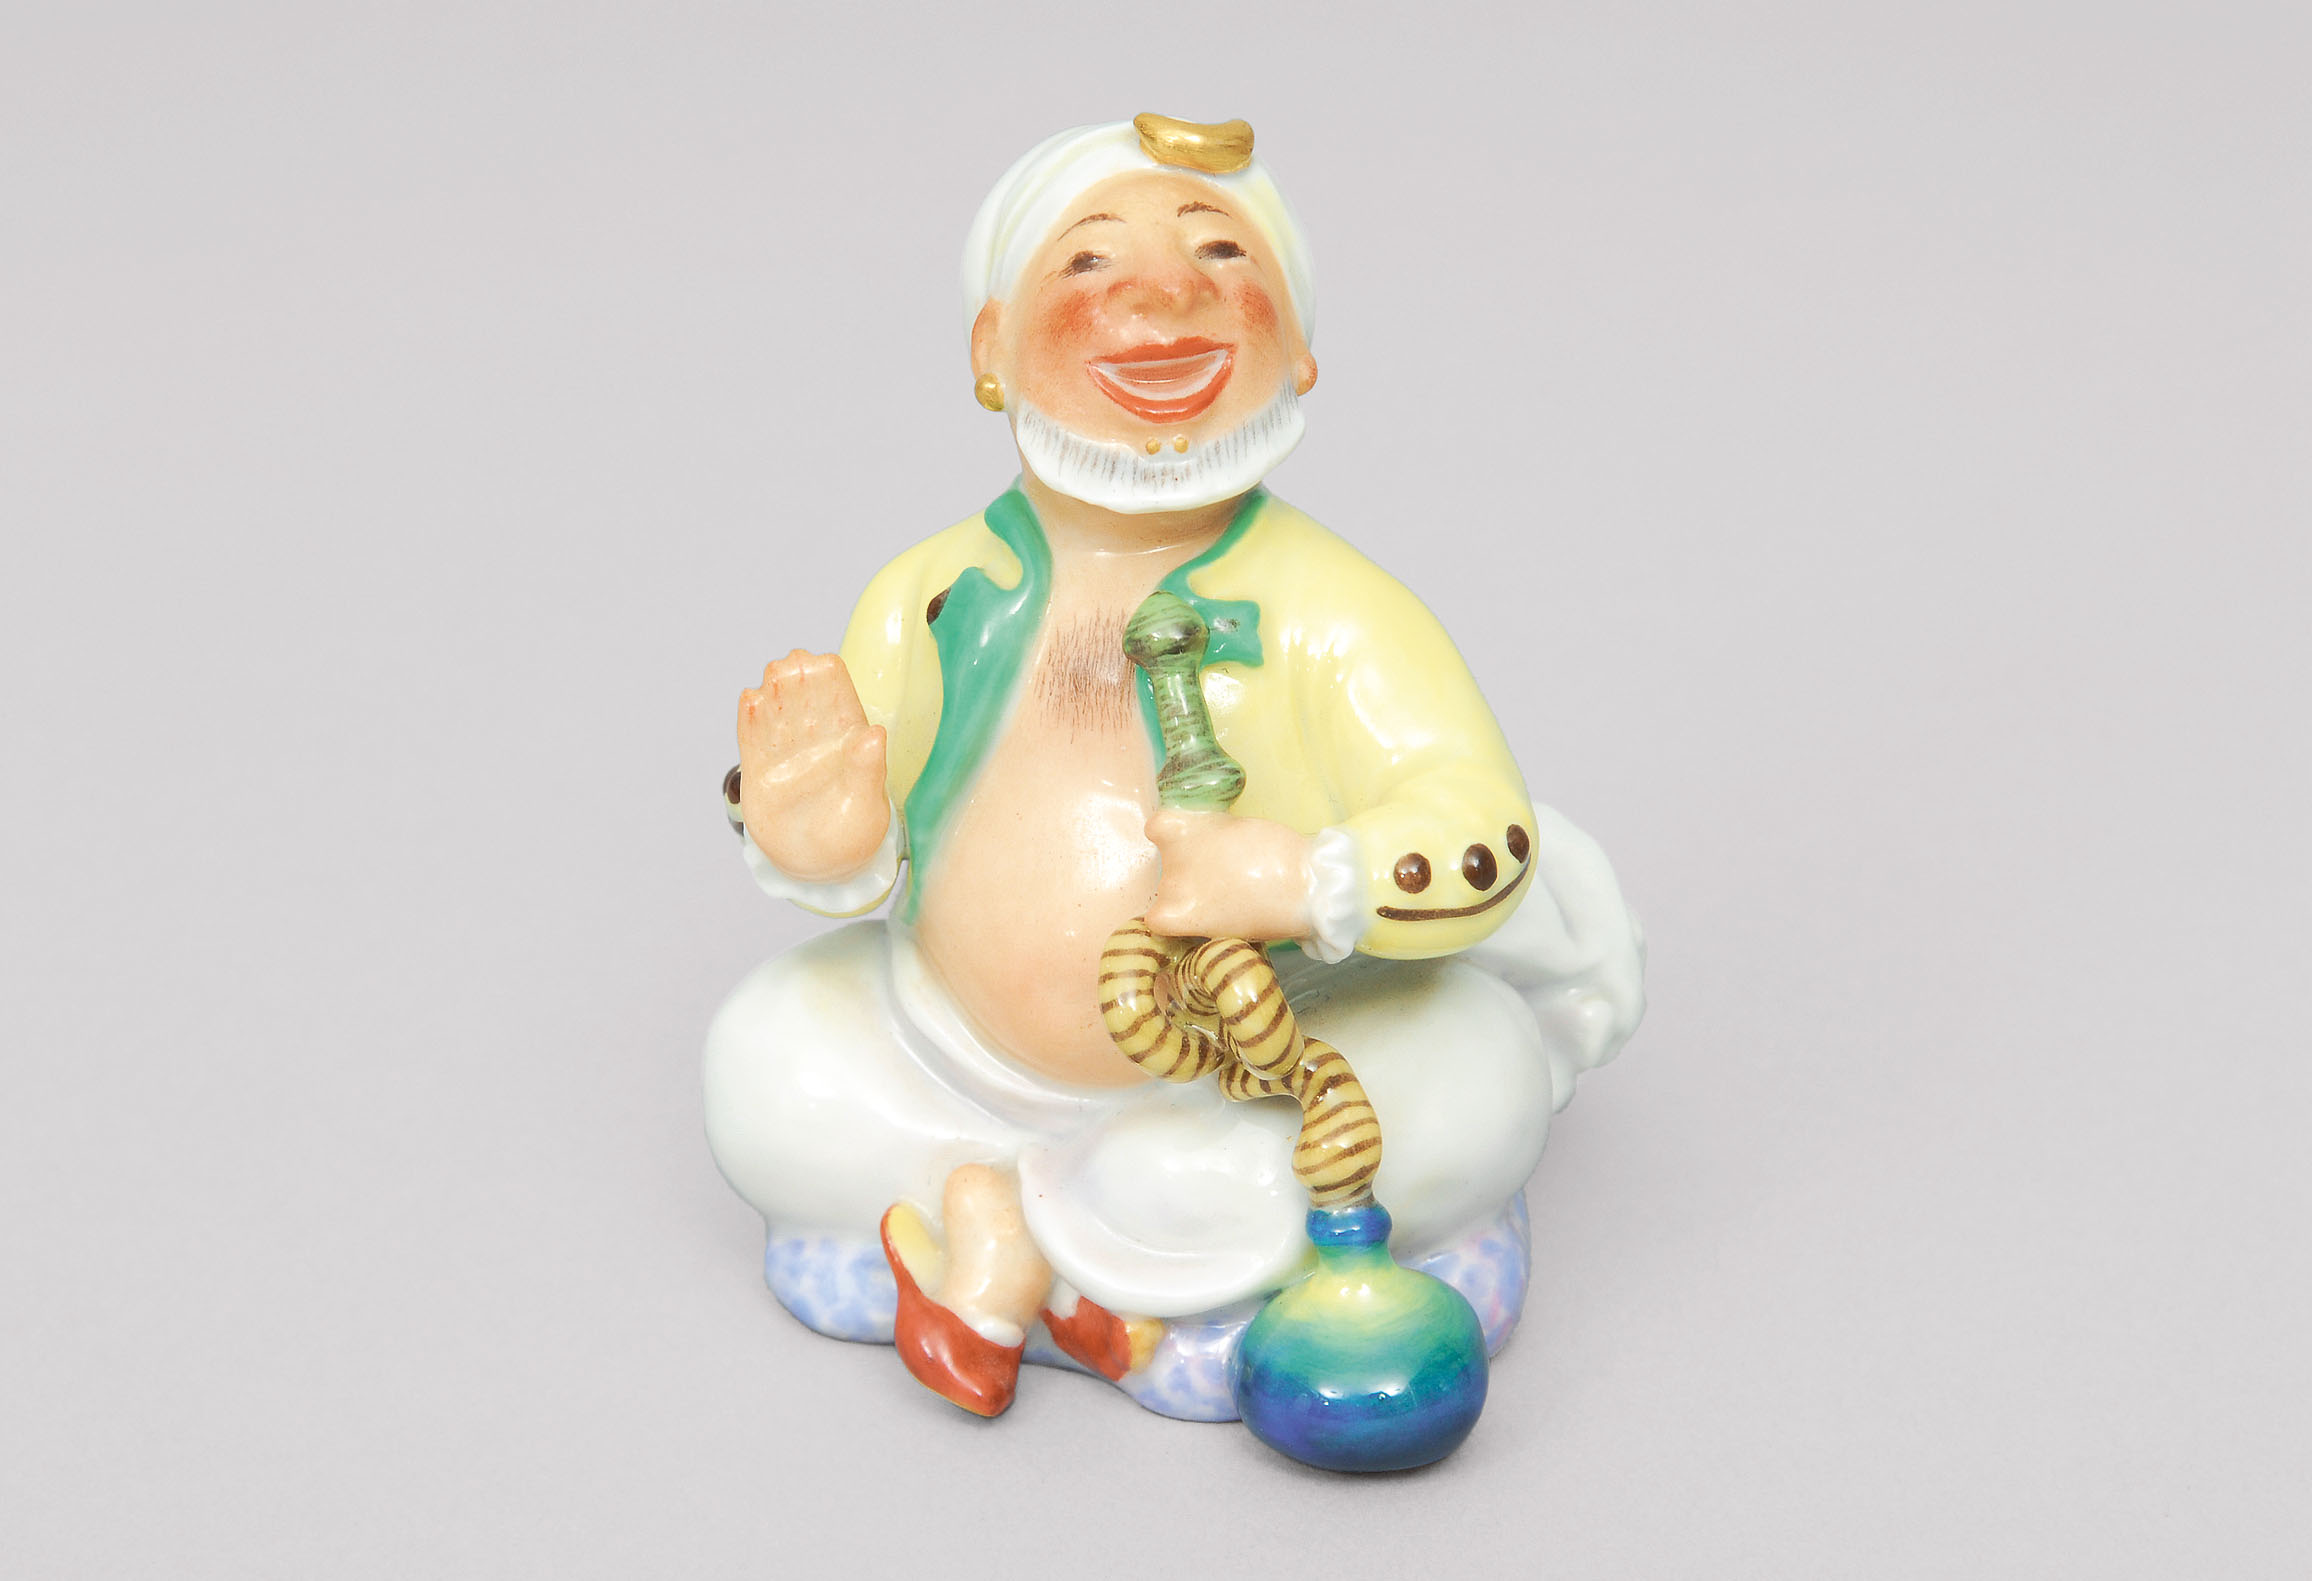 A figurine 'seated turk smoking a hookah'